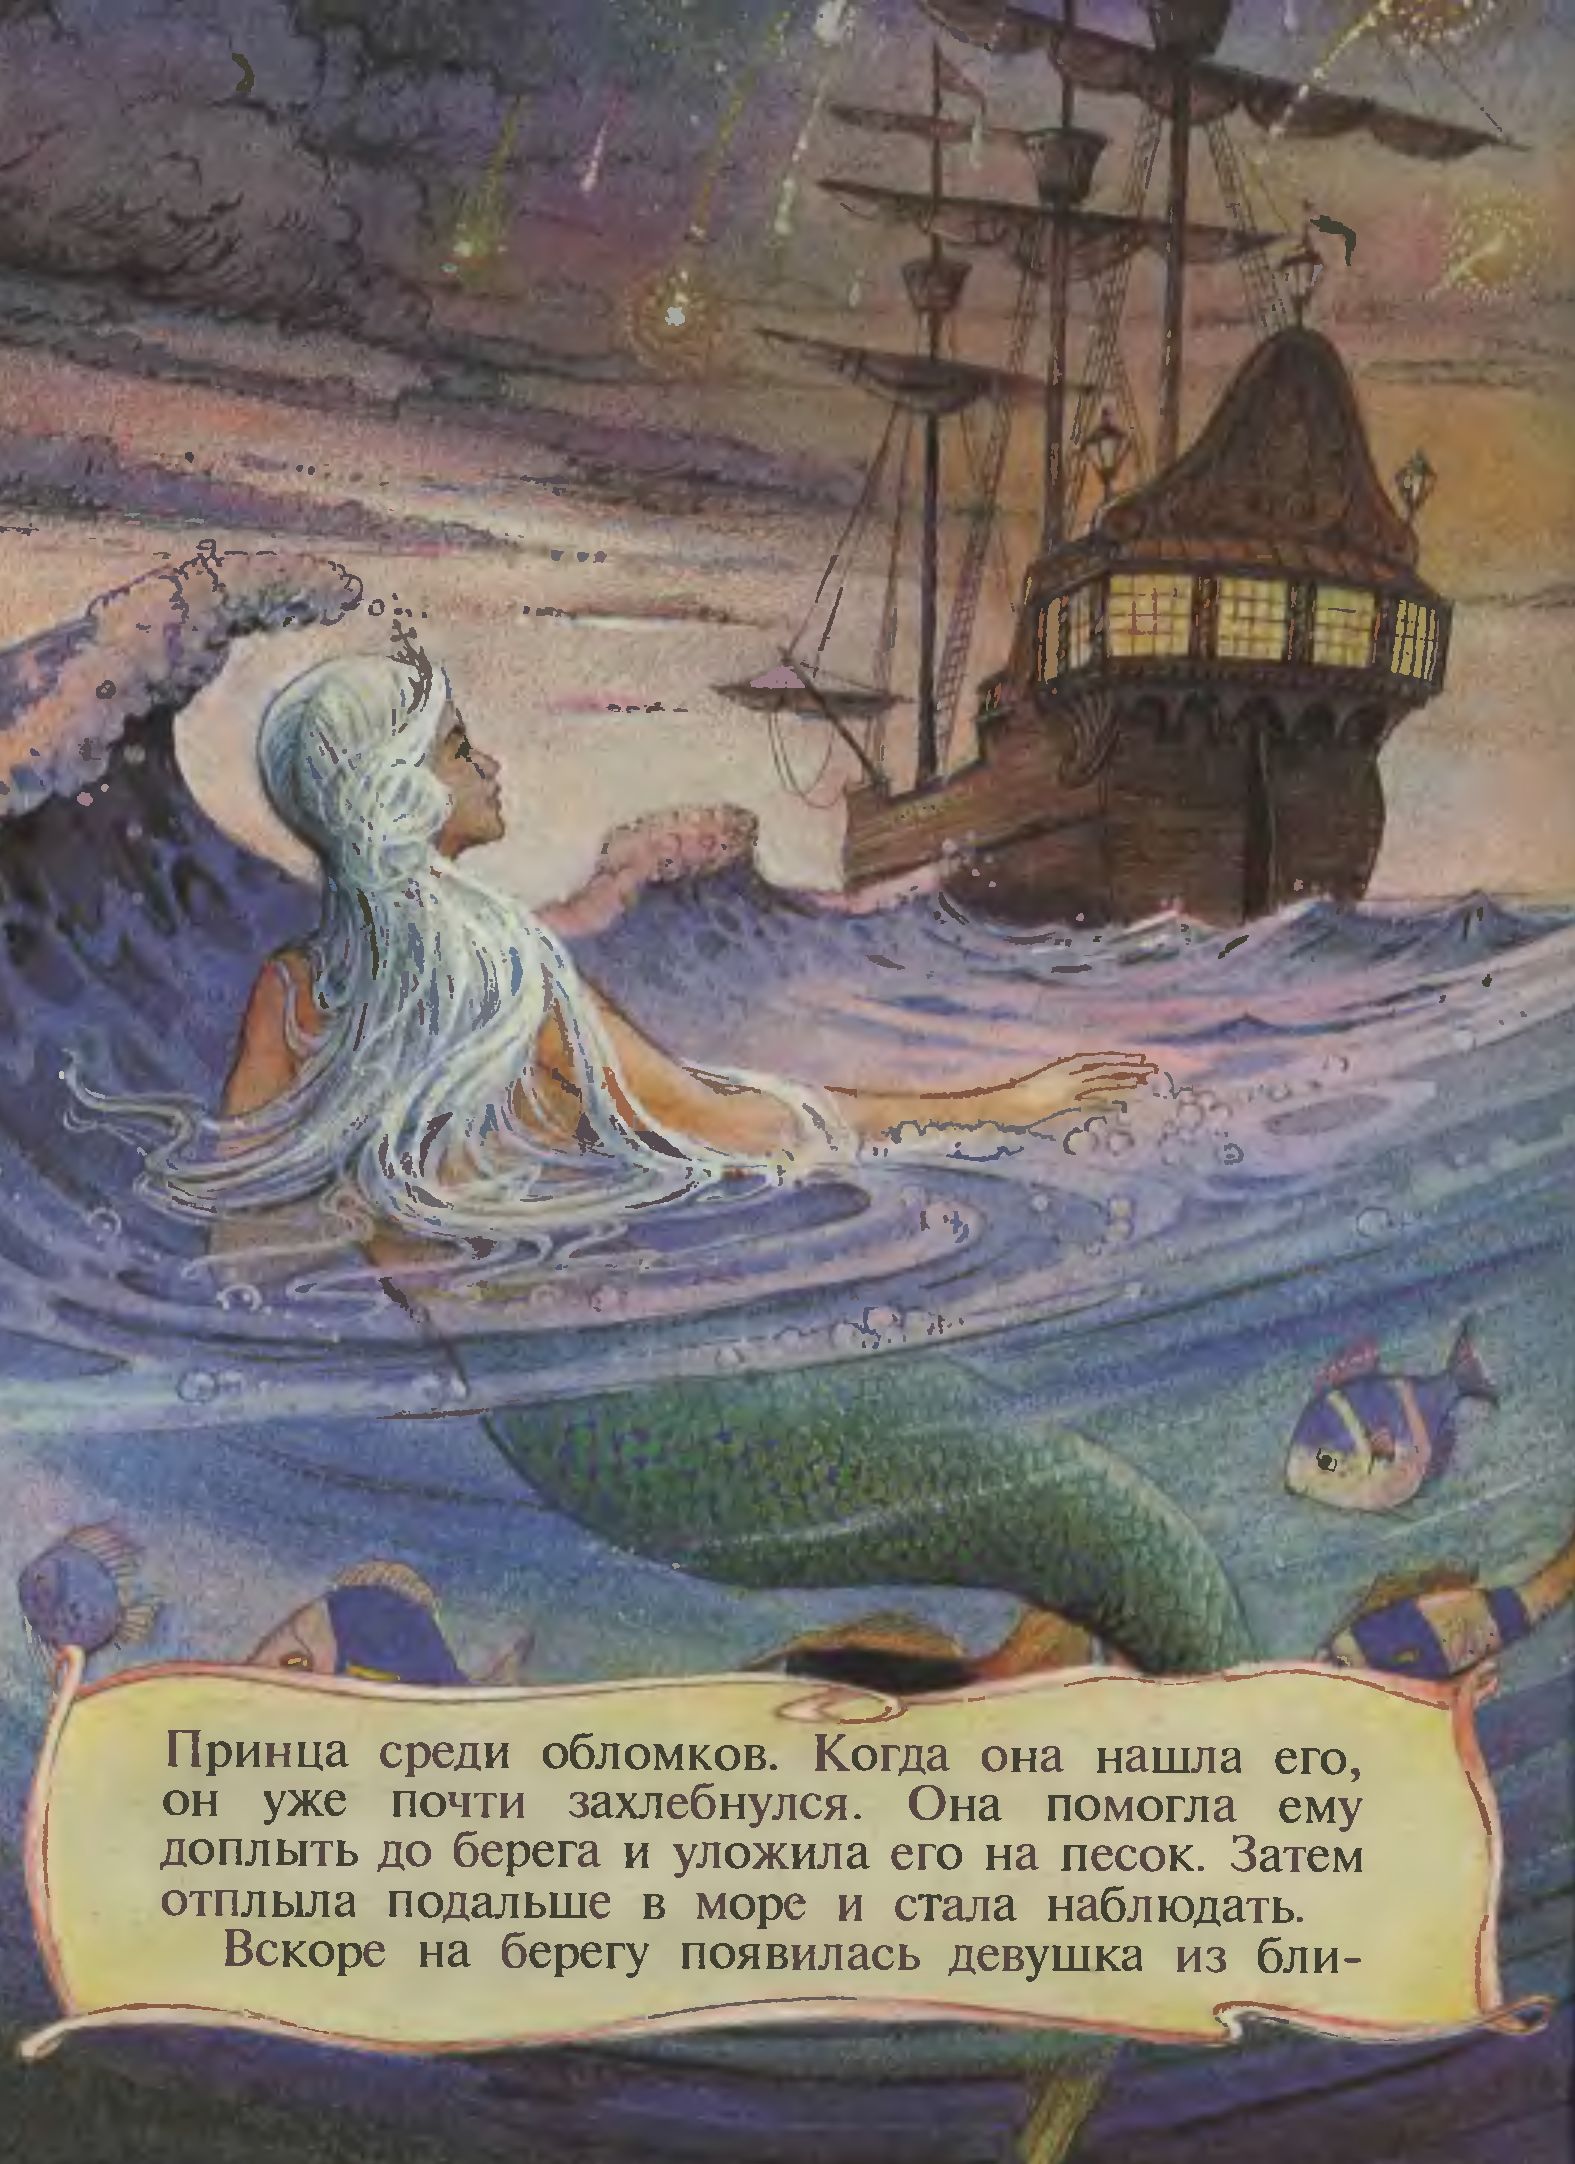 Иллюстрации Джона Пейшенса к сказке «Русалочка»